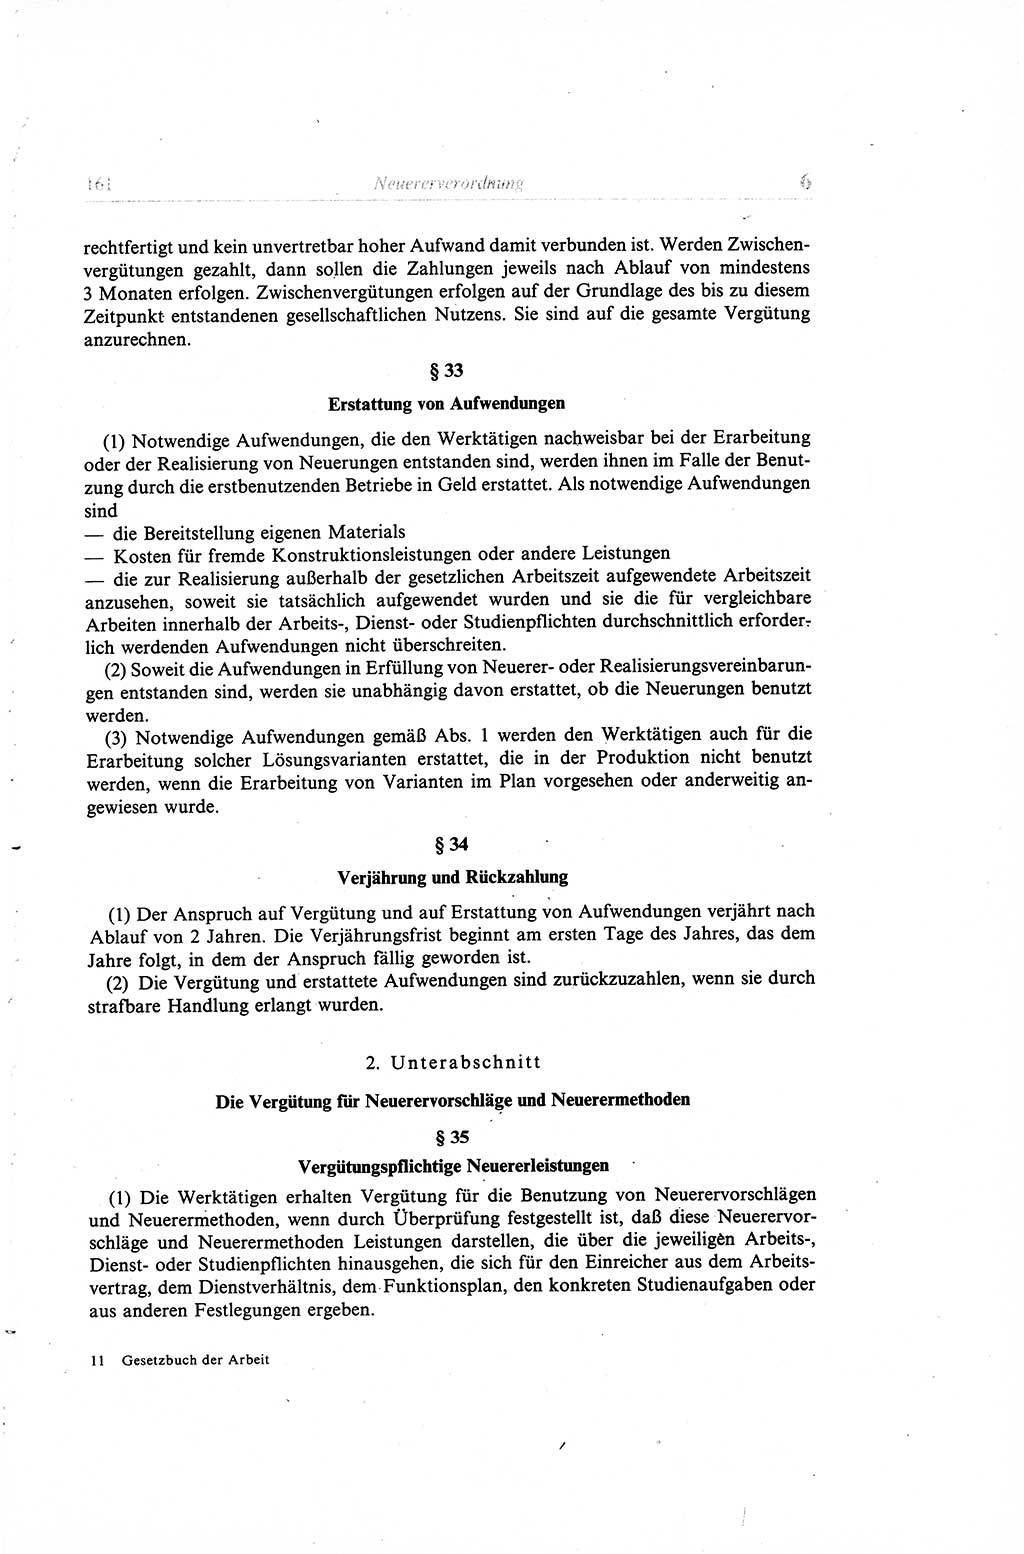 Gesetzbuch der Arbeit (GBA) und andere ausgewählte rechtliche Bestimmungen [Deutsche Demokratische Republik (DDR)] 1968, Seite 161 (GBA DDR 1968, S. 161)